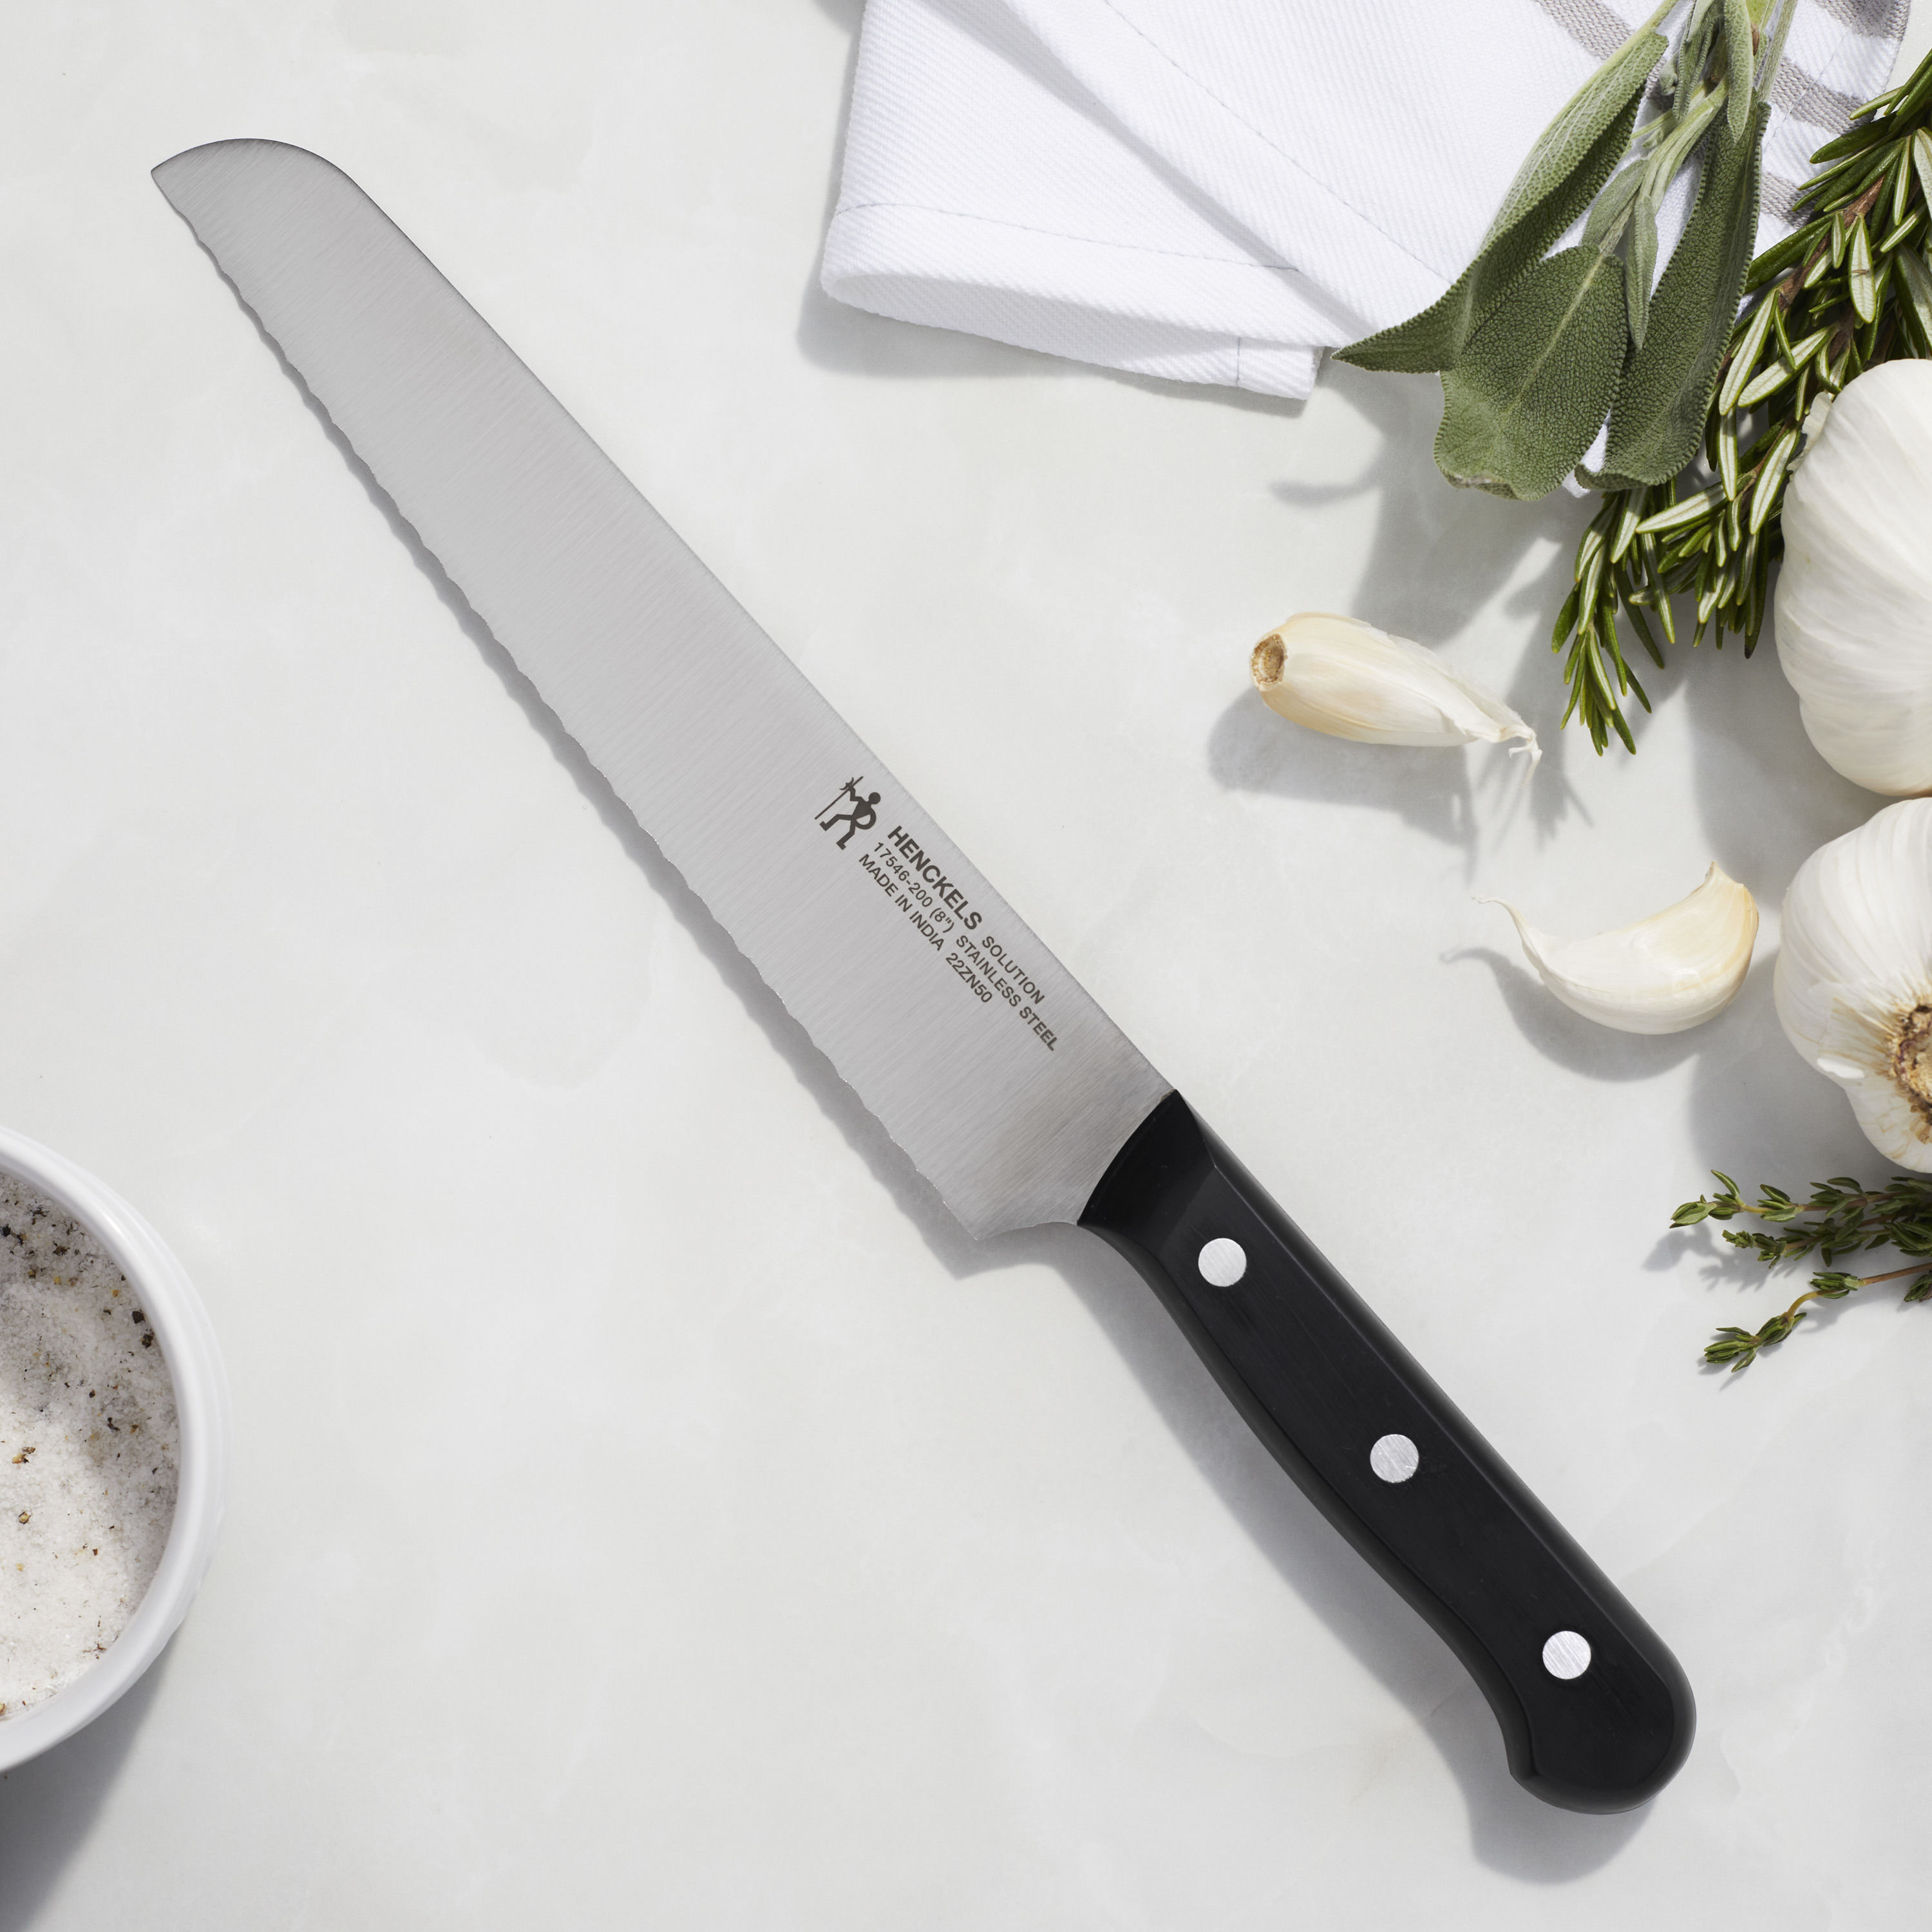  HENCKELS Statement Razor-Sharp 8-inch Bread Knife